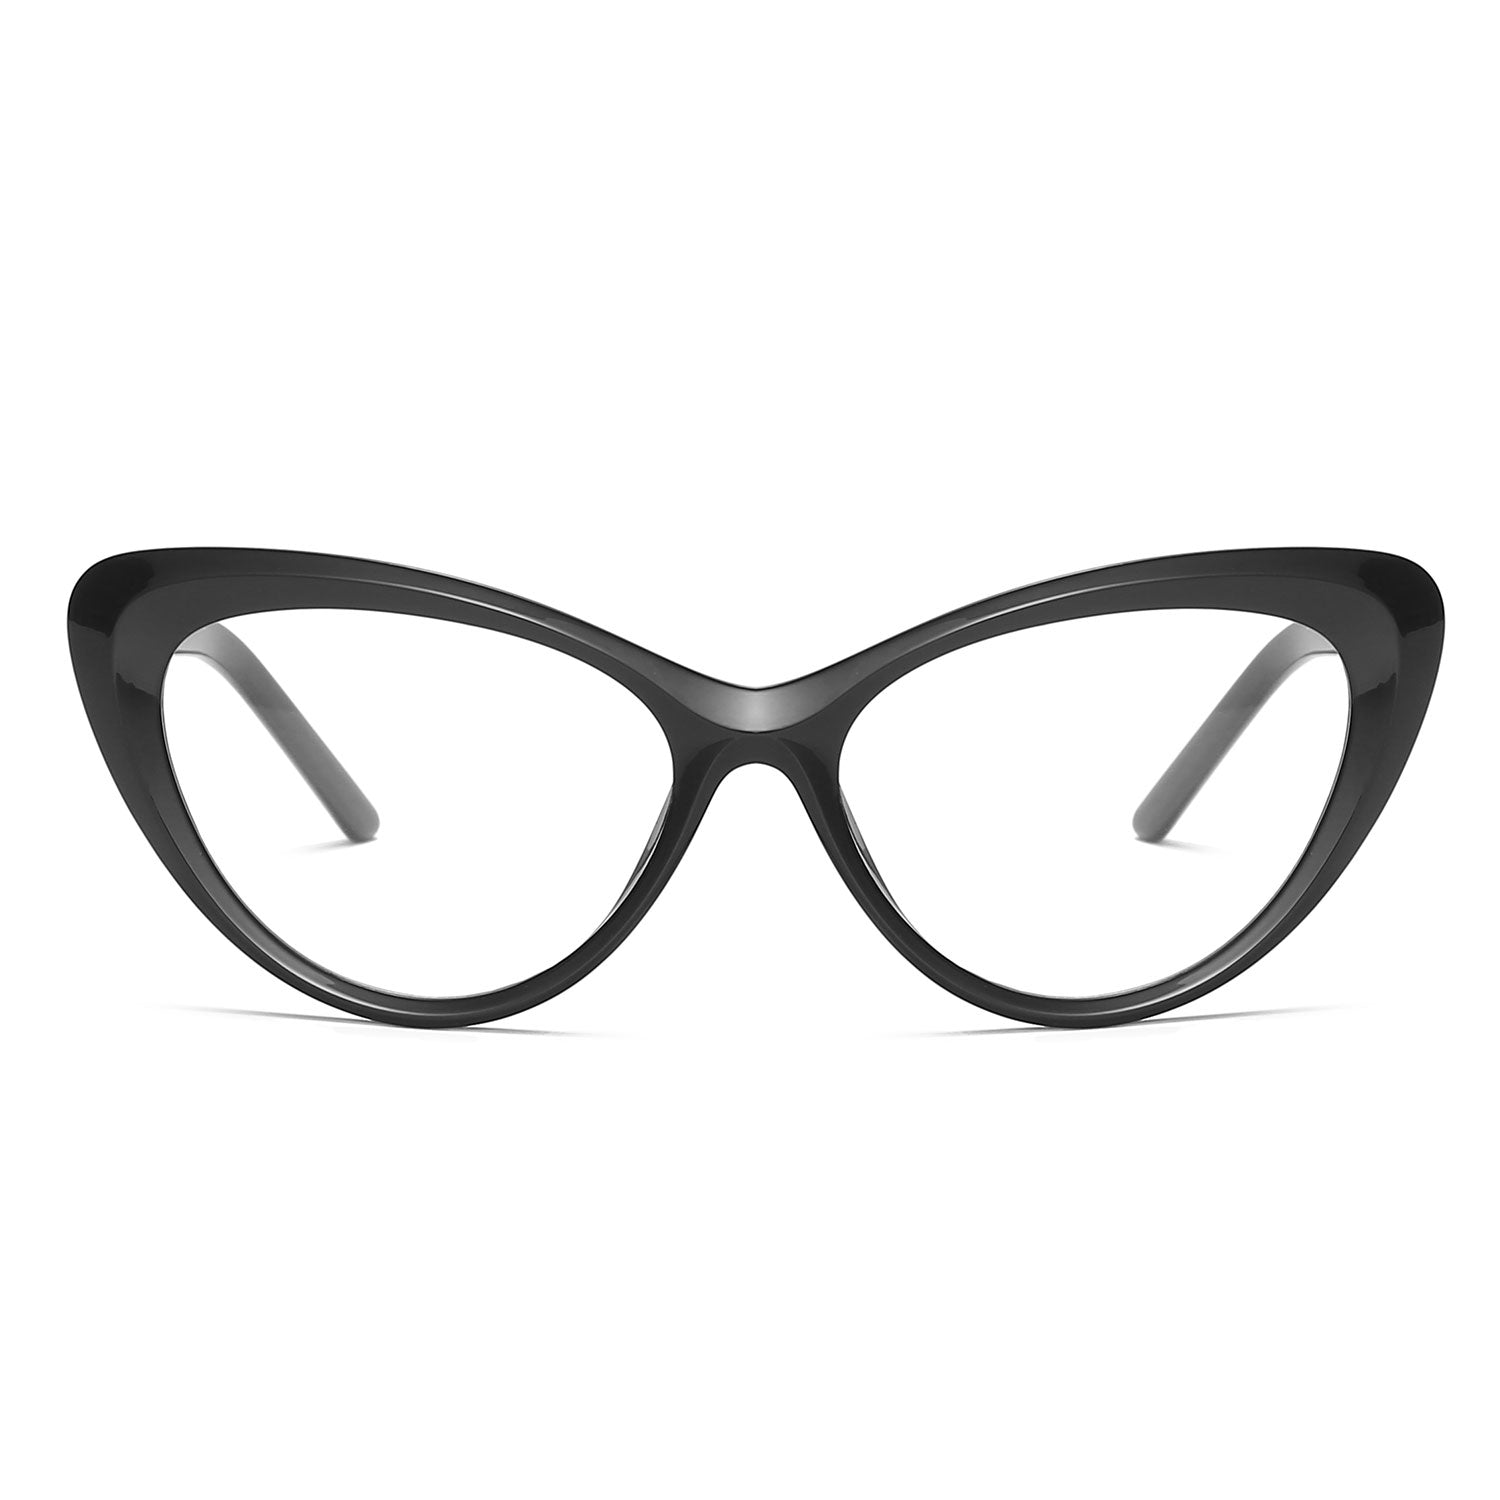 Bking-1 - Eyeglasses | ELKLOOK